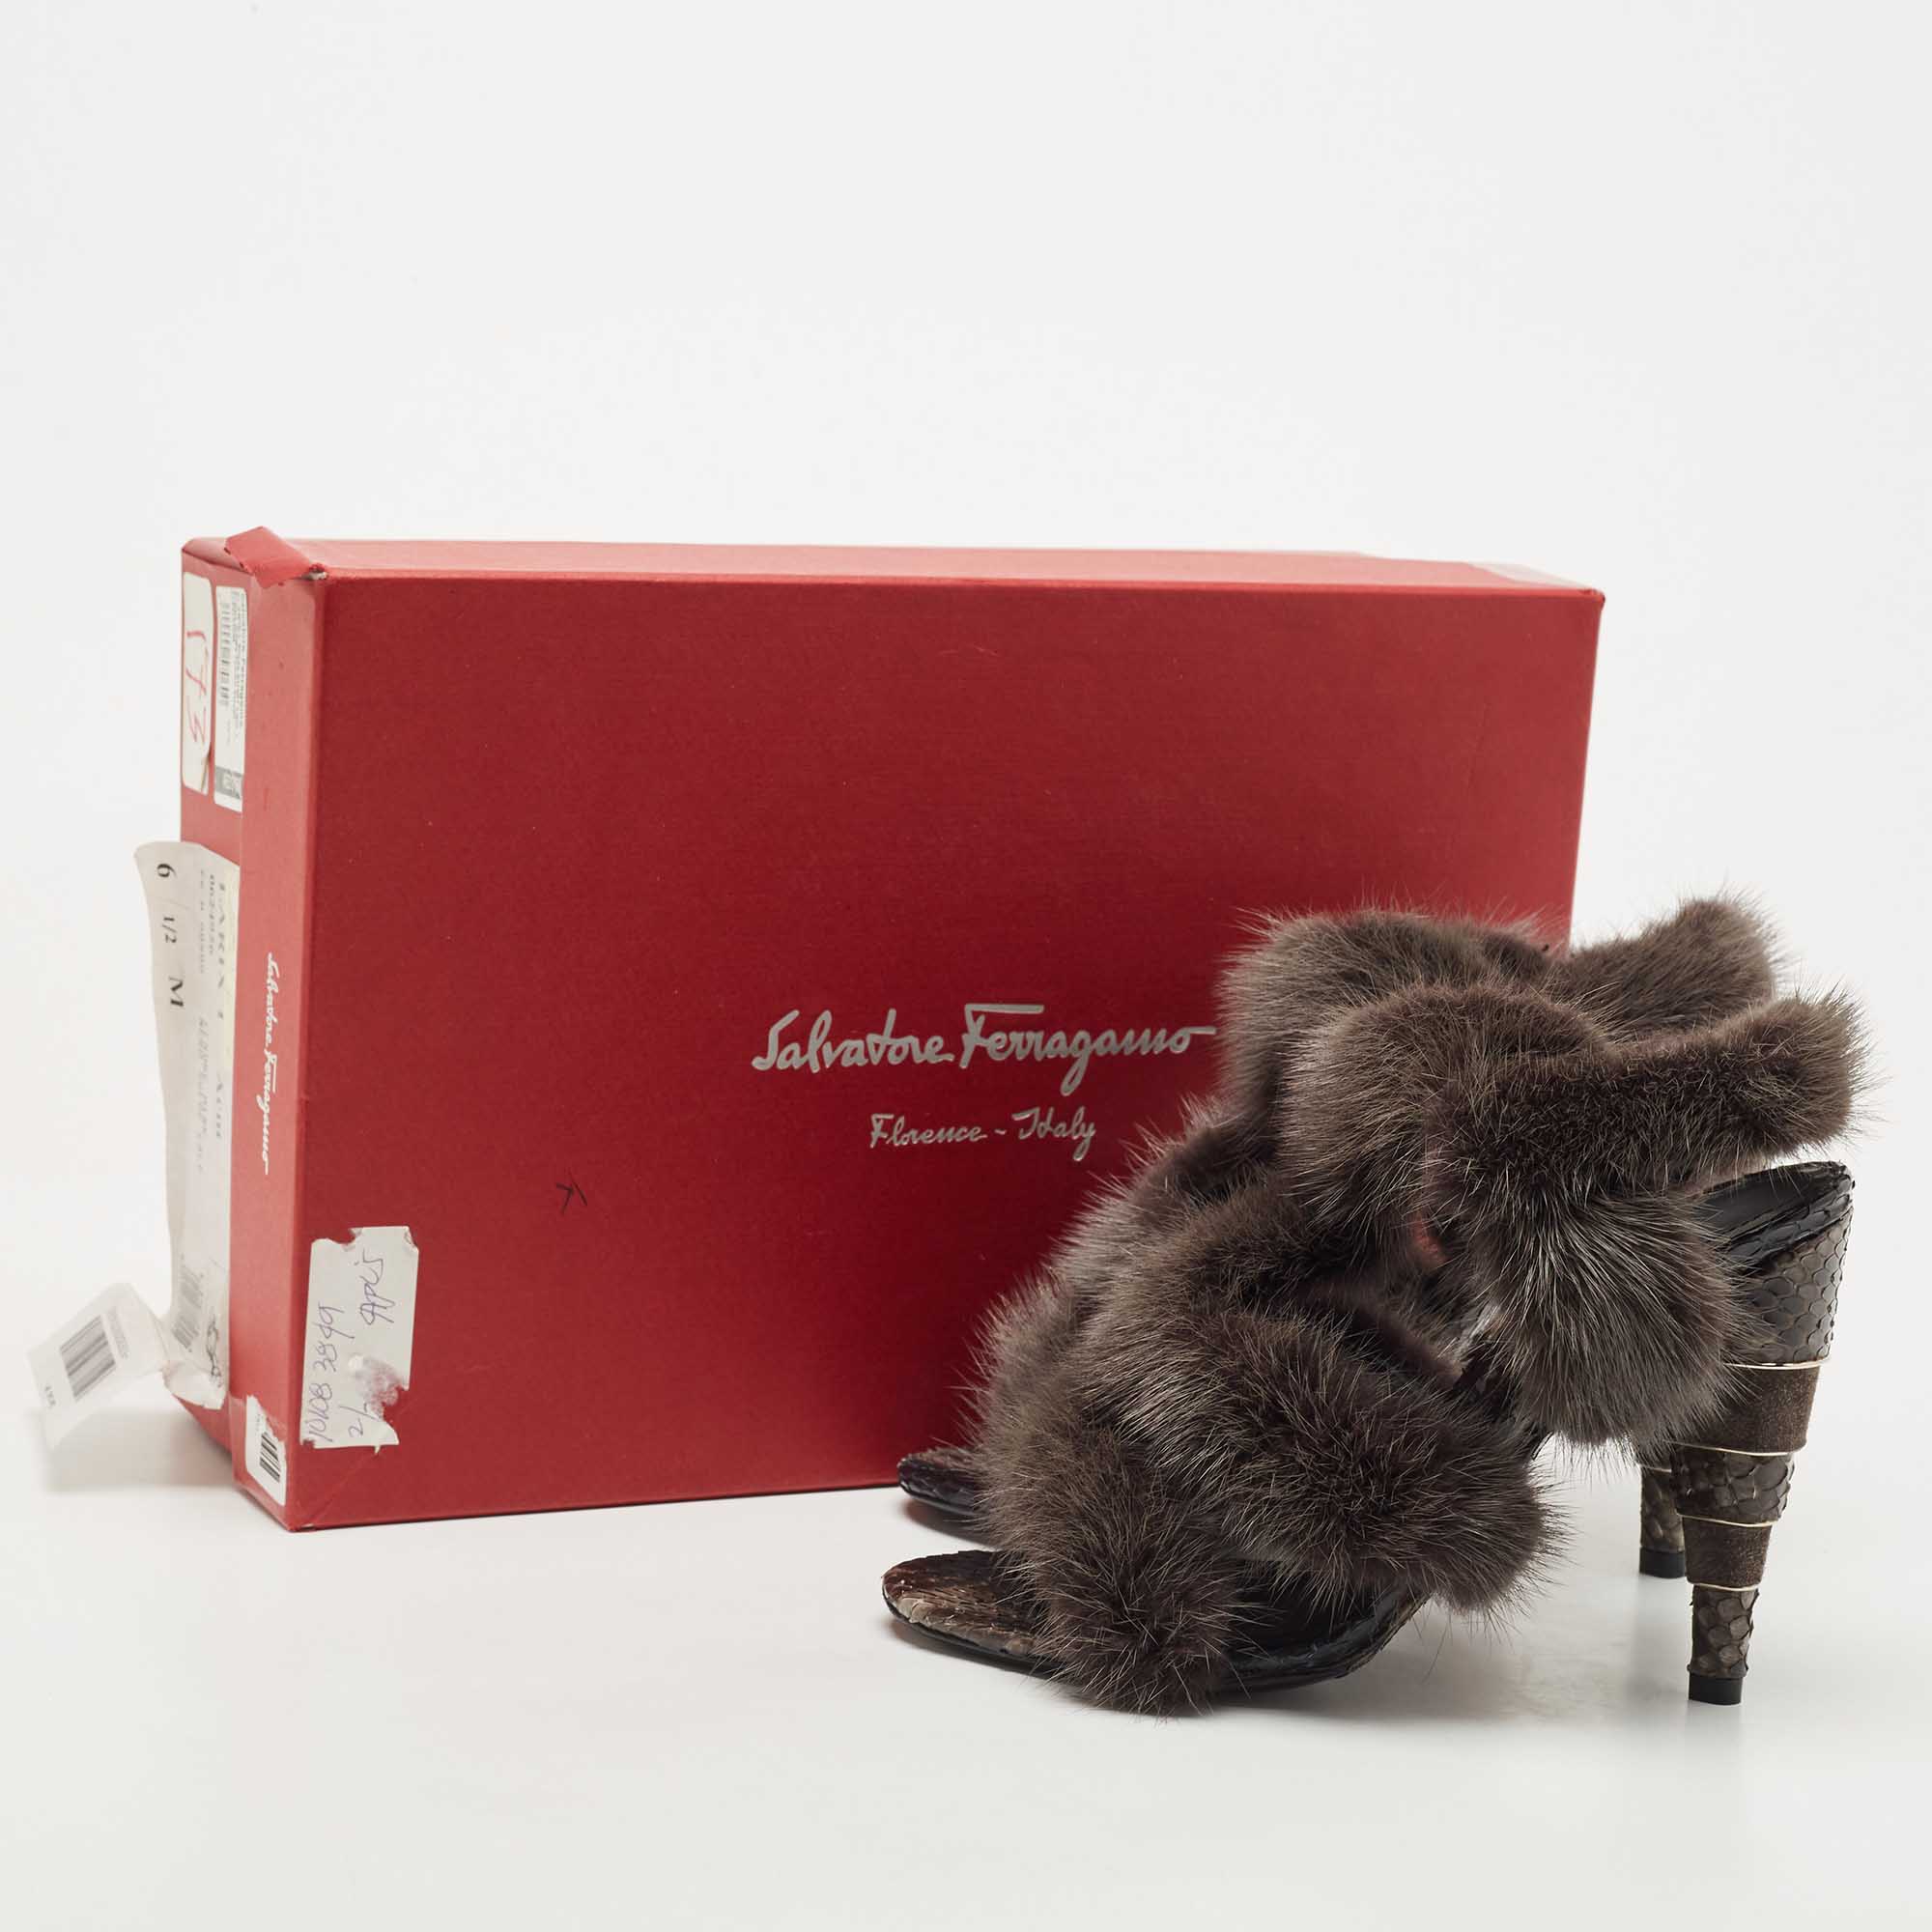 Salvatore Ferragamo Dark Grey Mink Fur And Python Leather Cage  Sandals Size 37